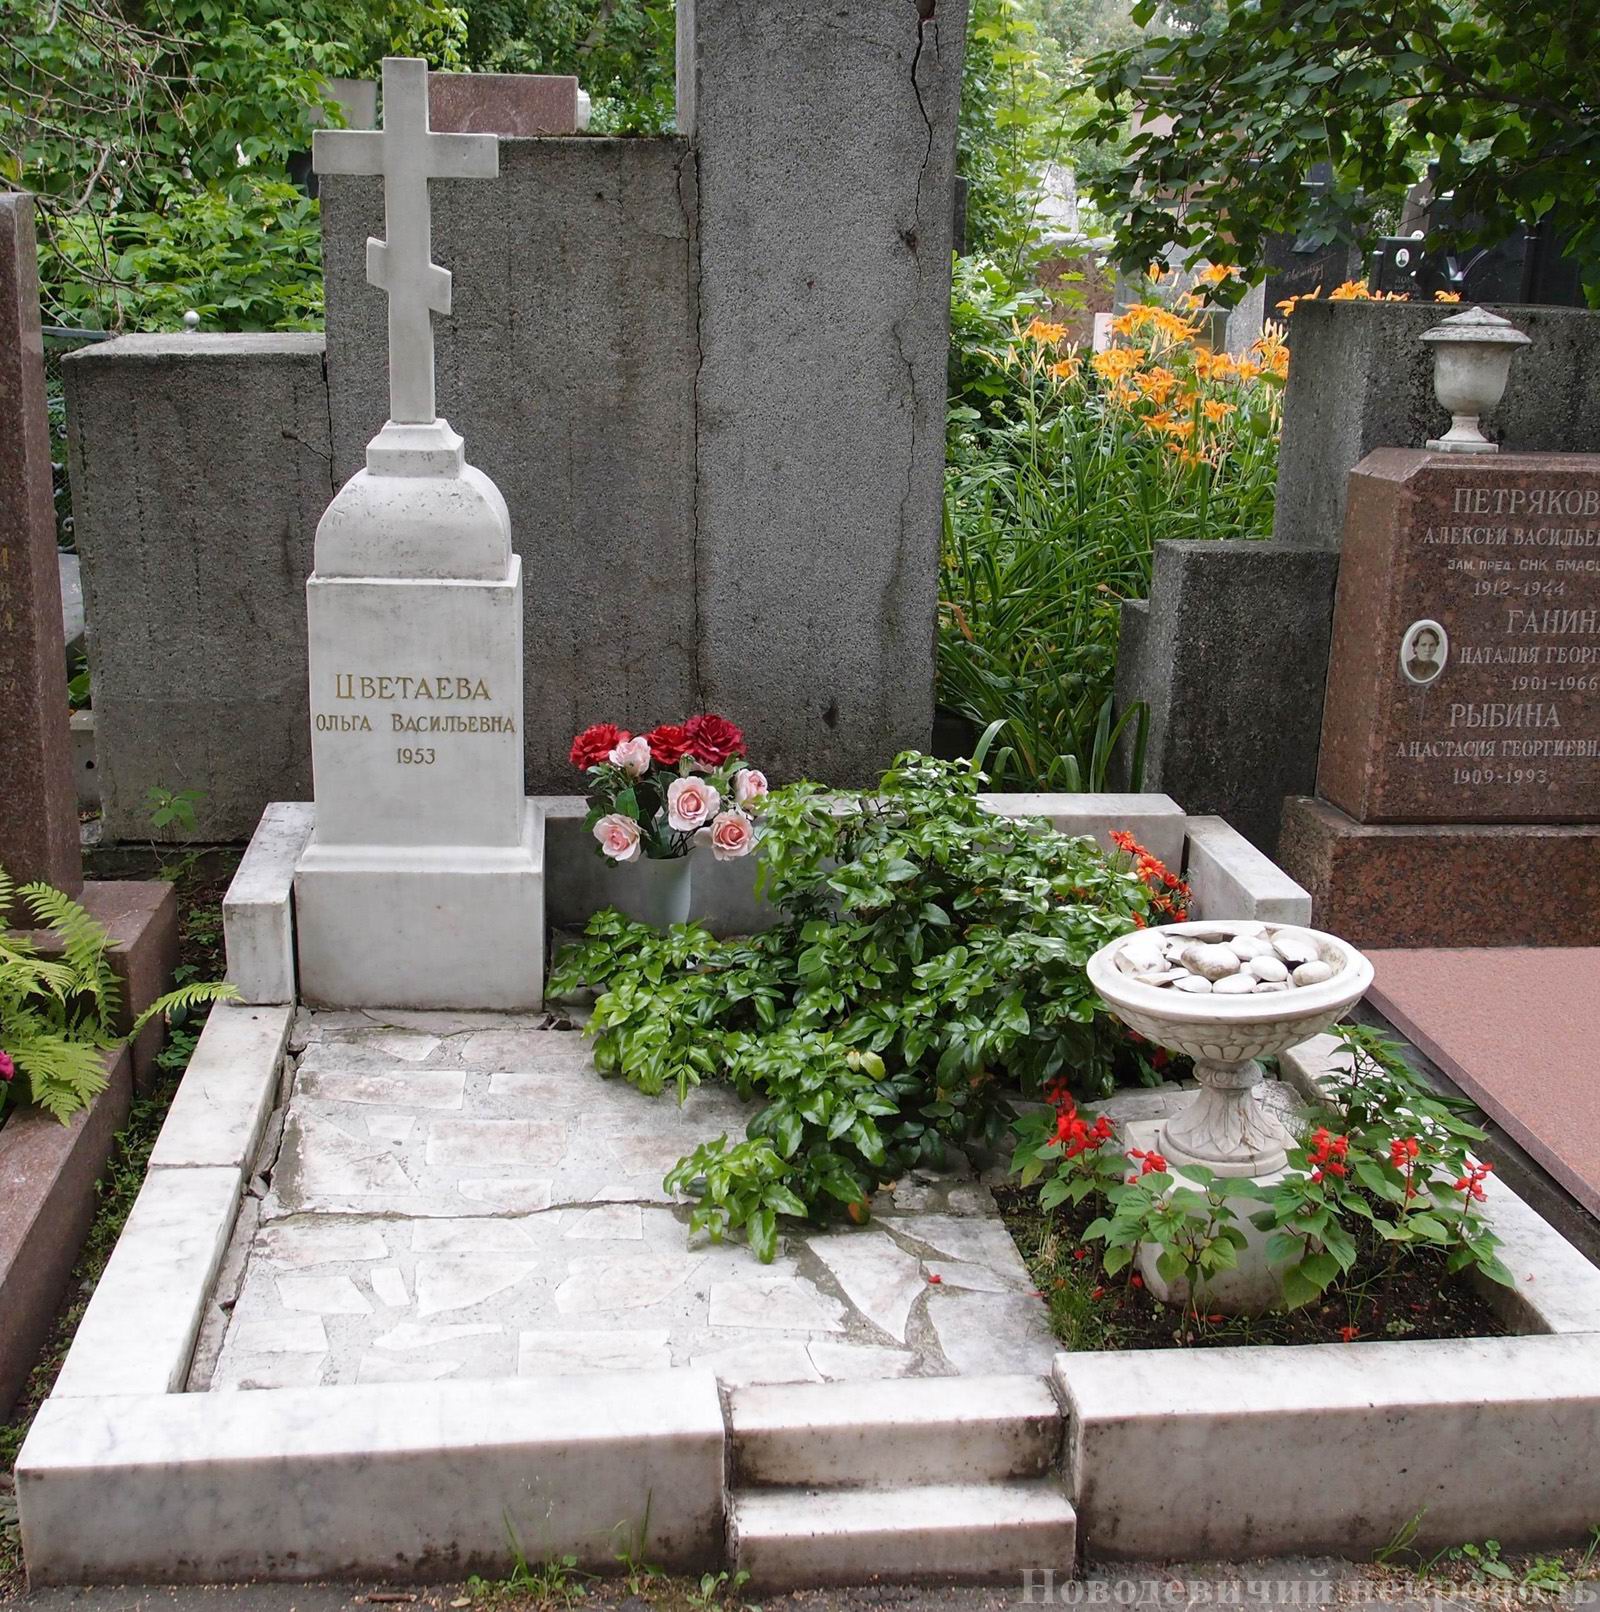 Памятник на могиле Цветаевой О.В. (1899-1953), на Новодевичьем кладбище (4-14-9).